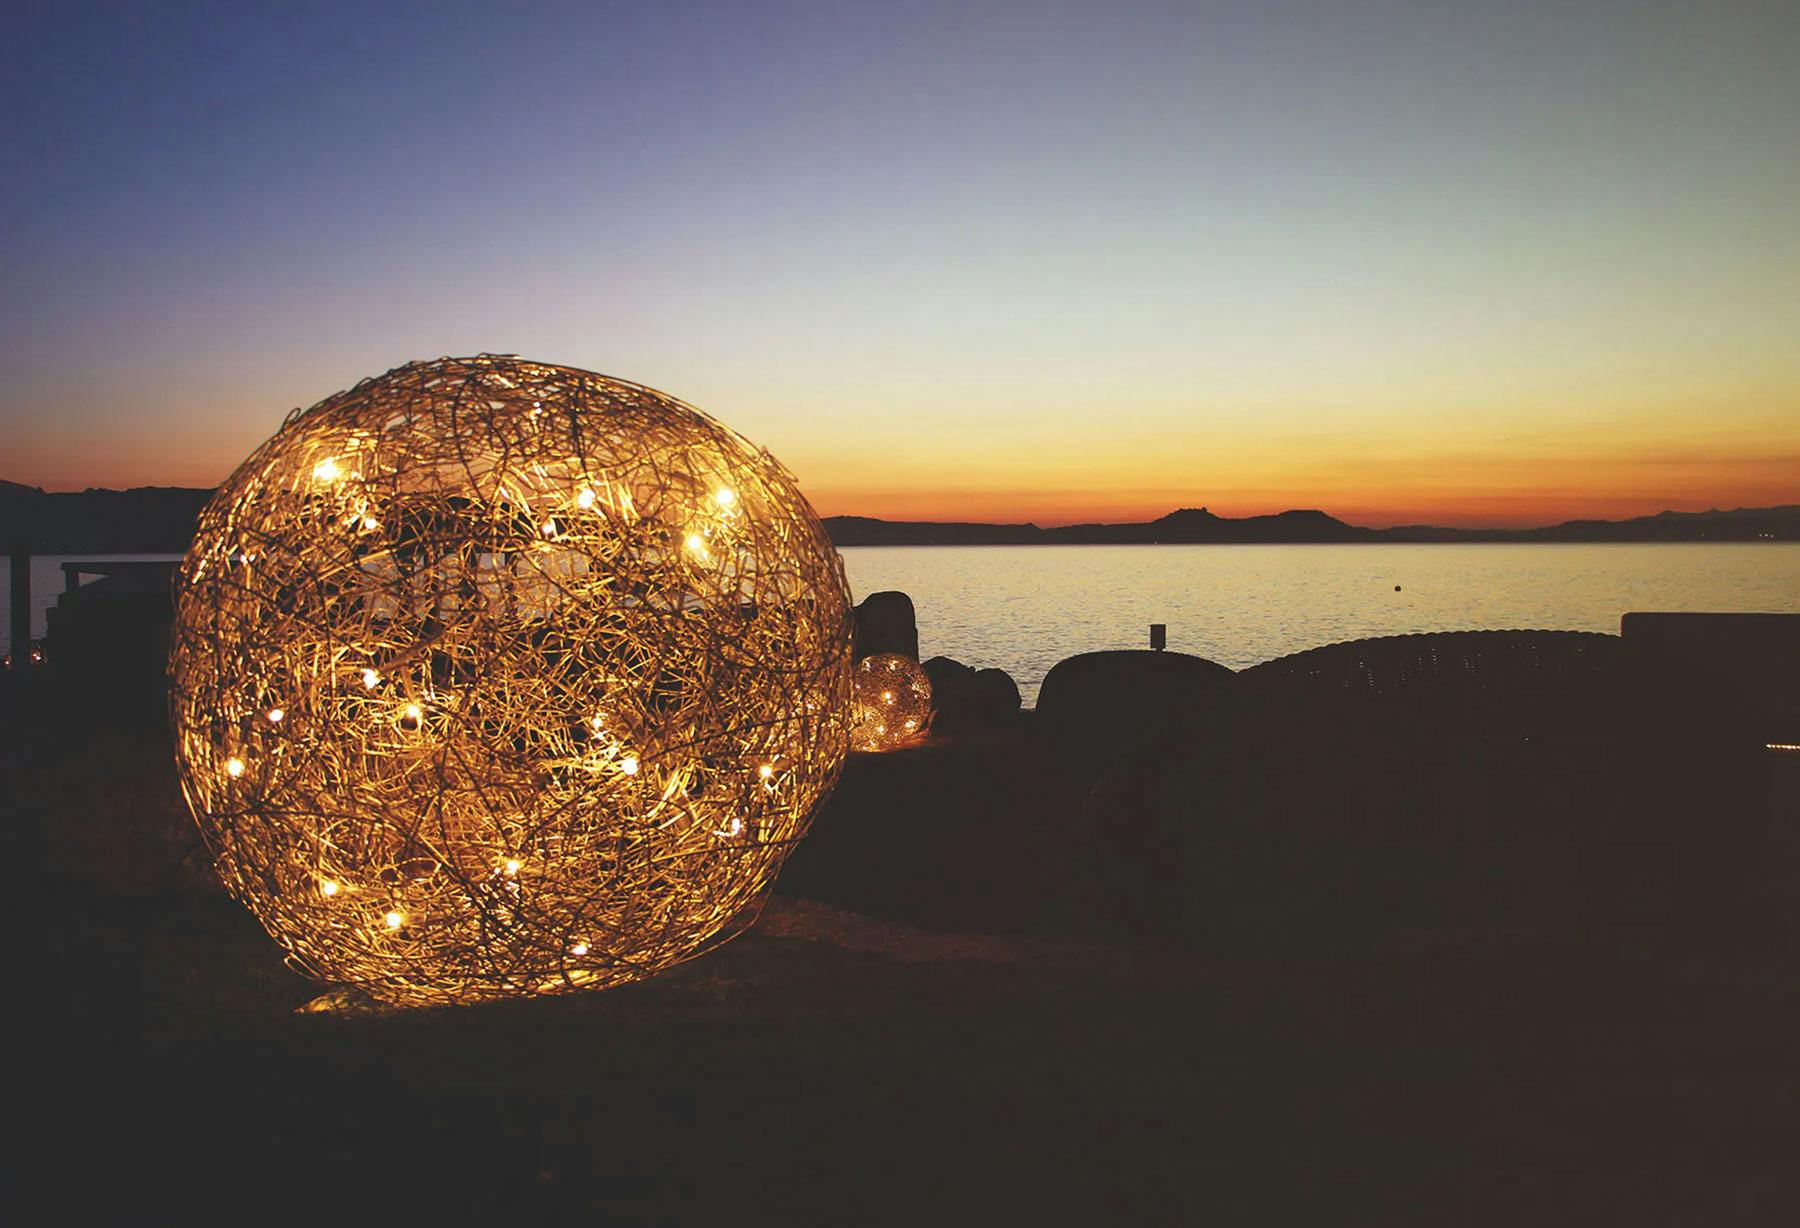 <p>Pour la deuxième saison, le Phi Beach, situé sur la Costa Smeralda, en Sardaigne, devient la vitrine parfaite des lampes de la collection d’extérieur dans un lieu enchanteur à la beauté rare.</p>
